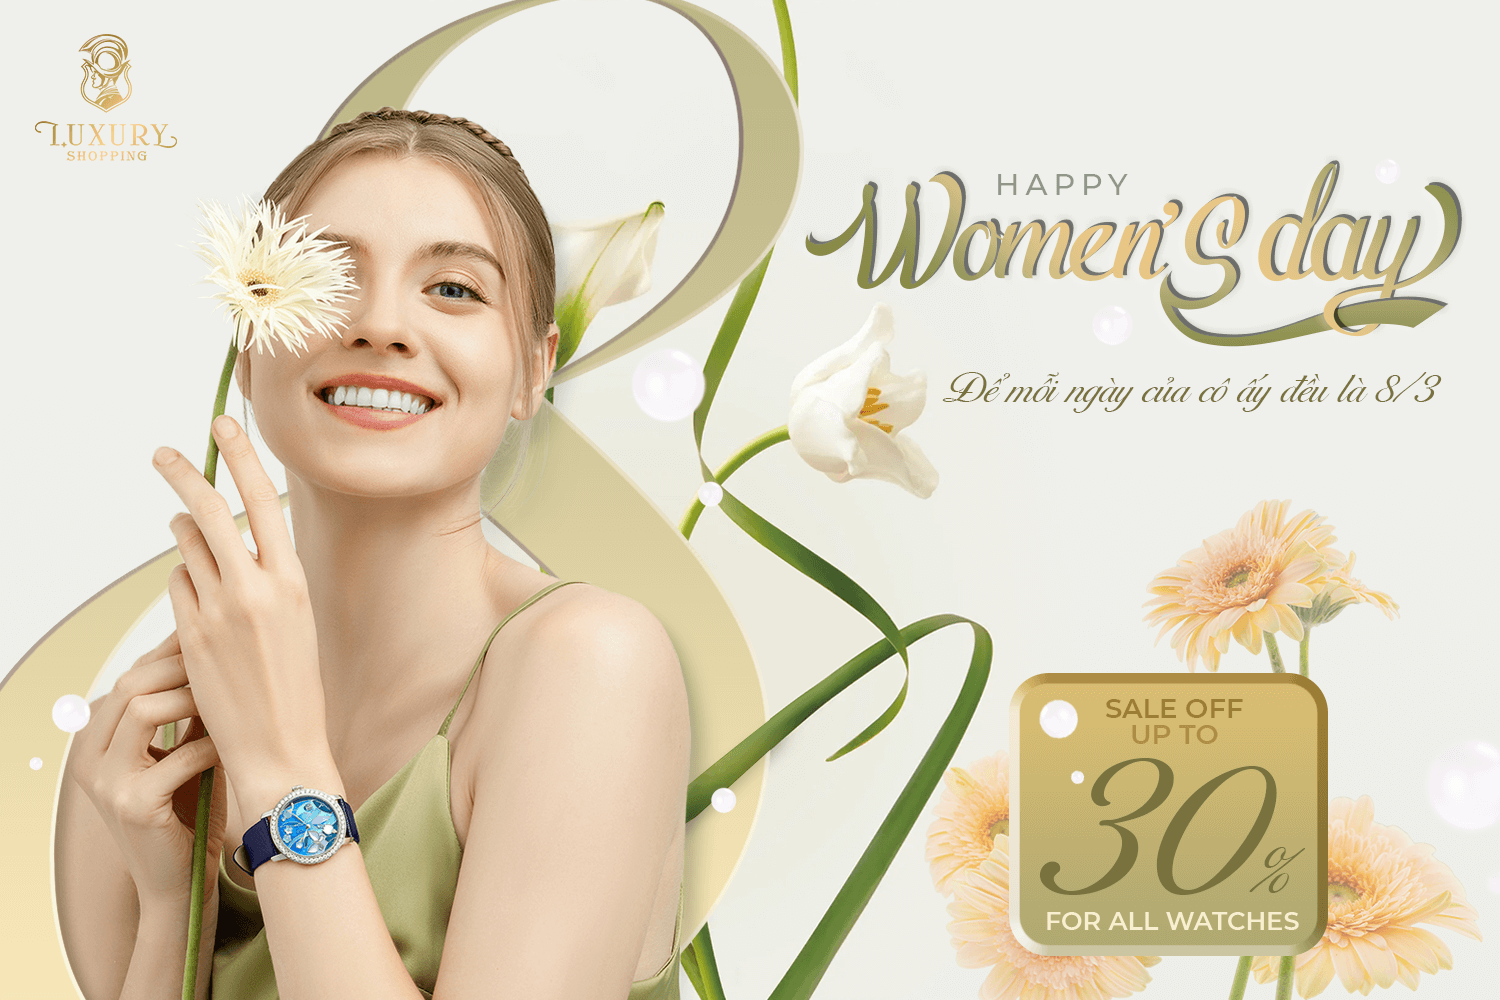 mừng ngày quốc tế phụ nữ 8/3 - đồng hồ hiệu chính hãng giảm giá lên đến 30%